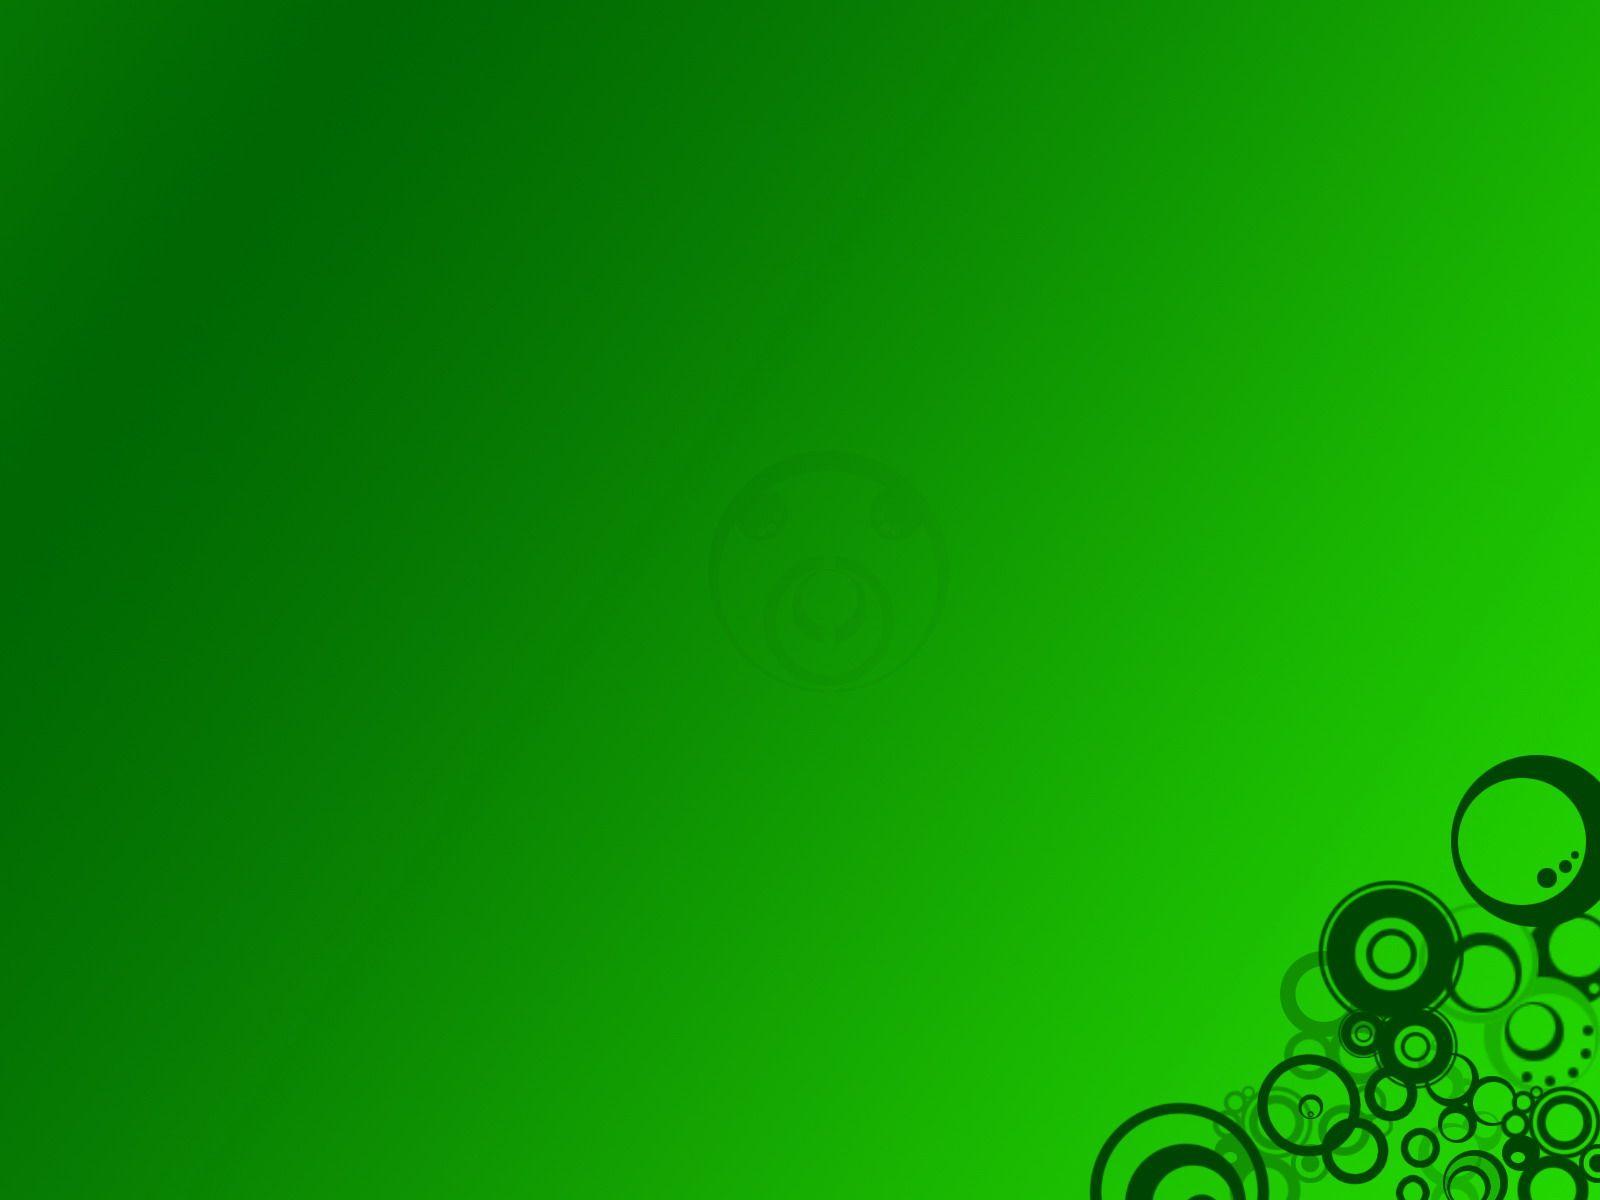 Green Background HD desktop wallpaper, High Definition 1920×1080